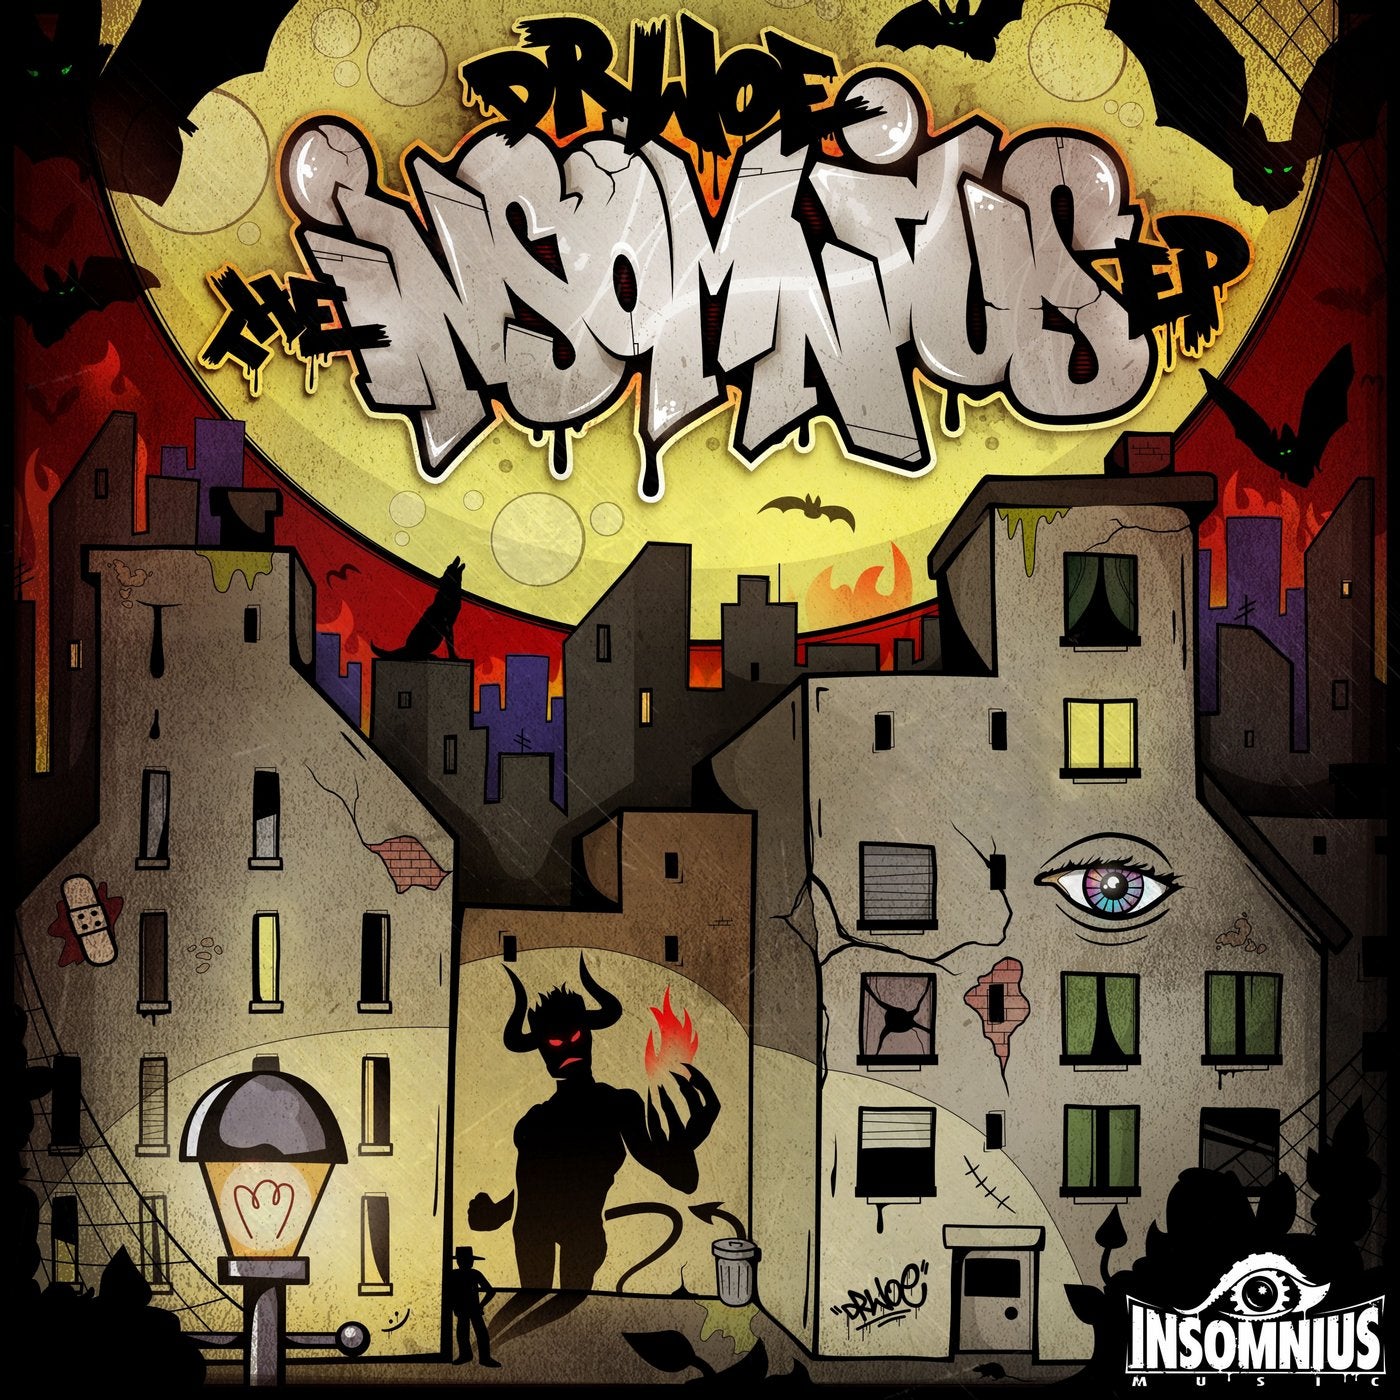 The Insomnius EP